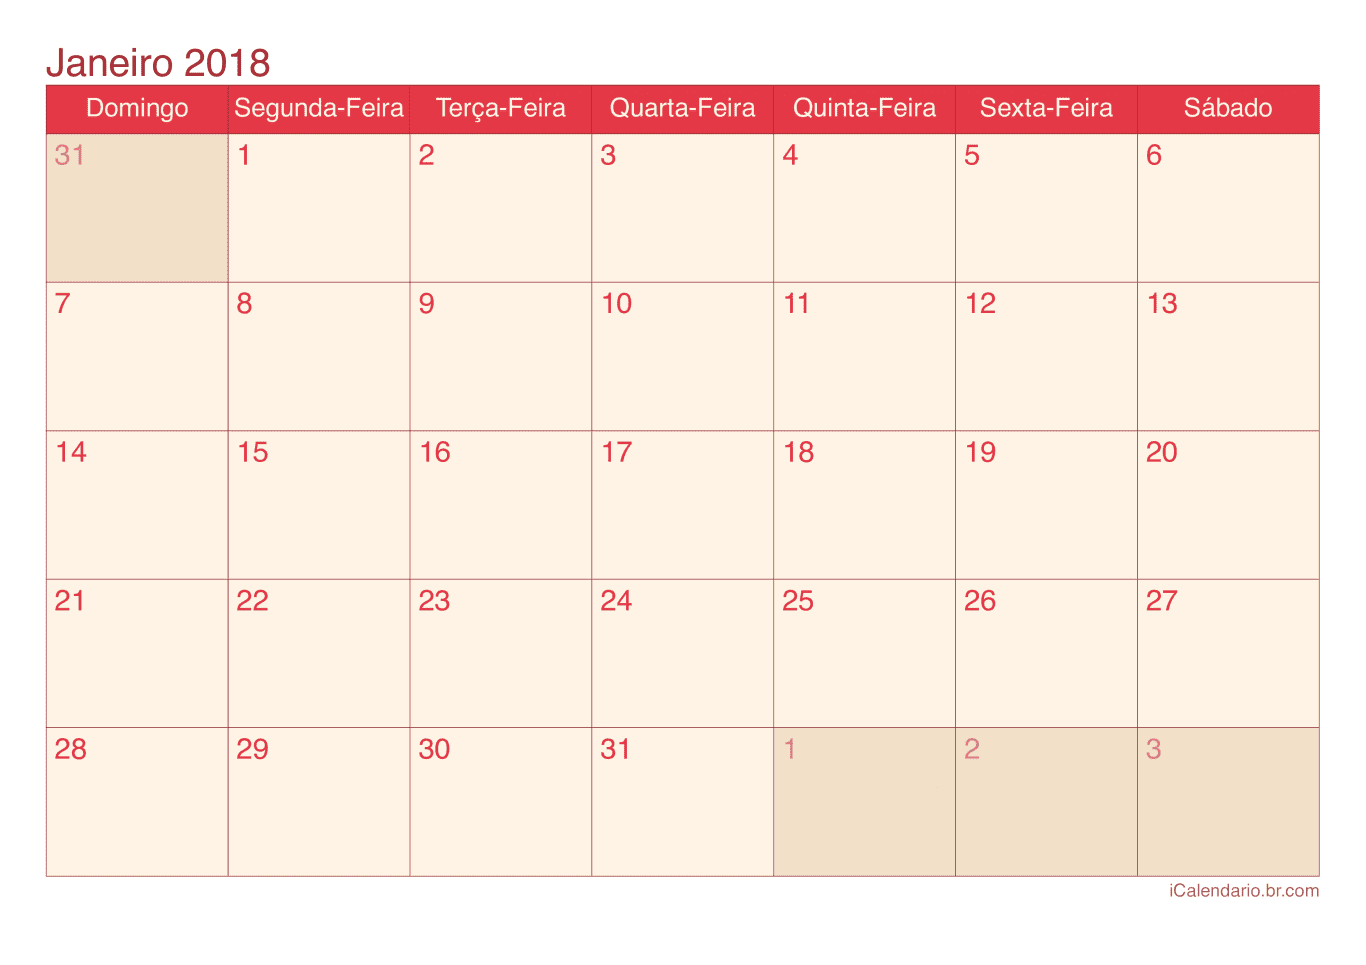 Calendário por mês 2018 - Cherry